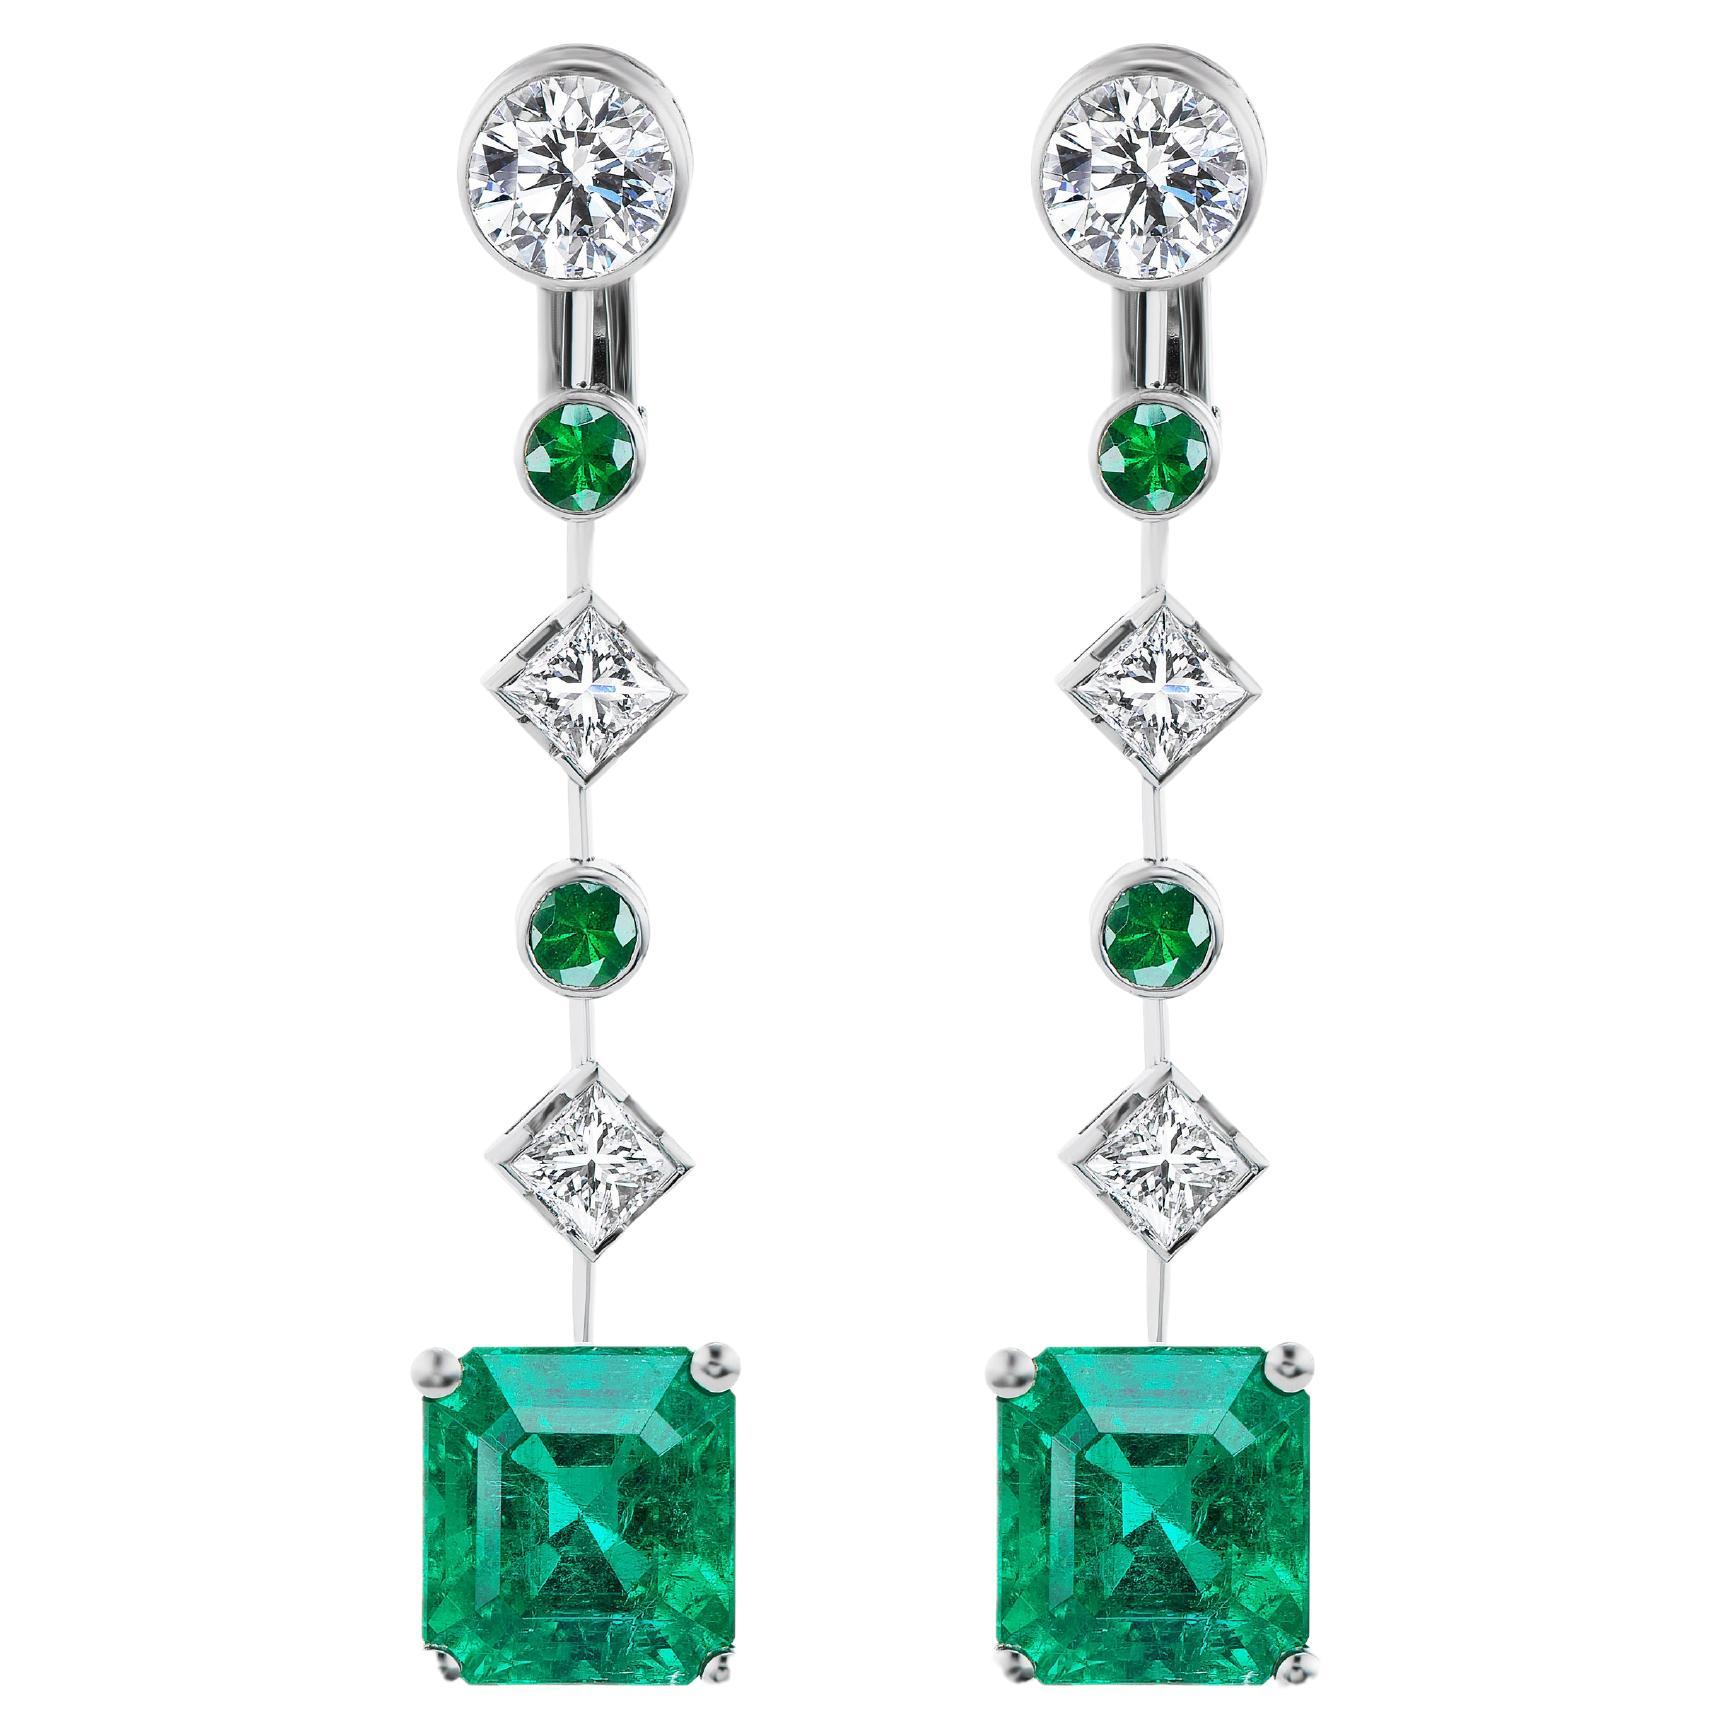 Chaumet SSEF Certified Colombian Emerald Diamond Earrings